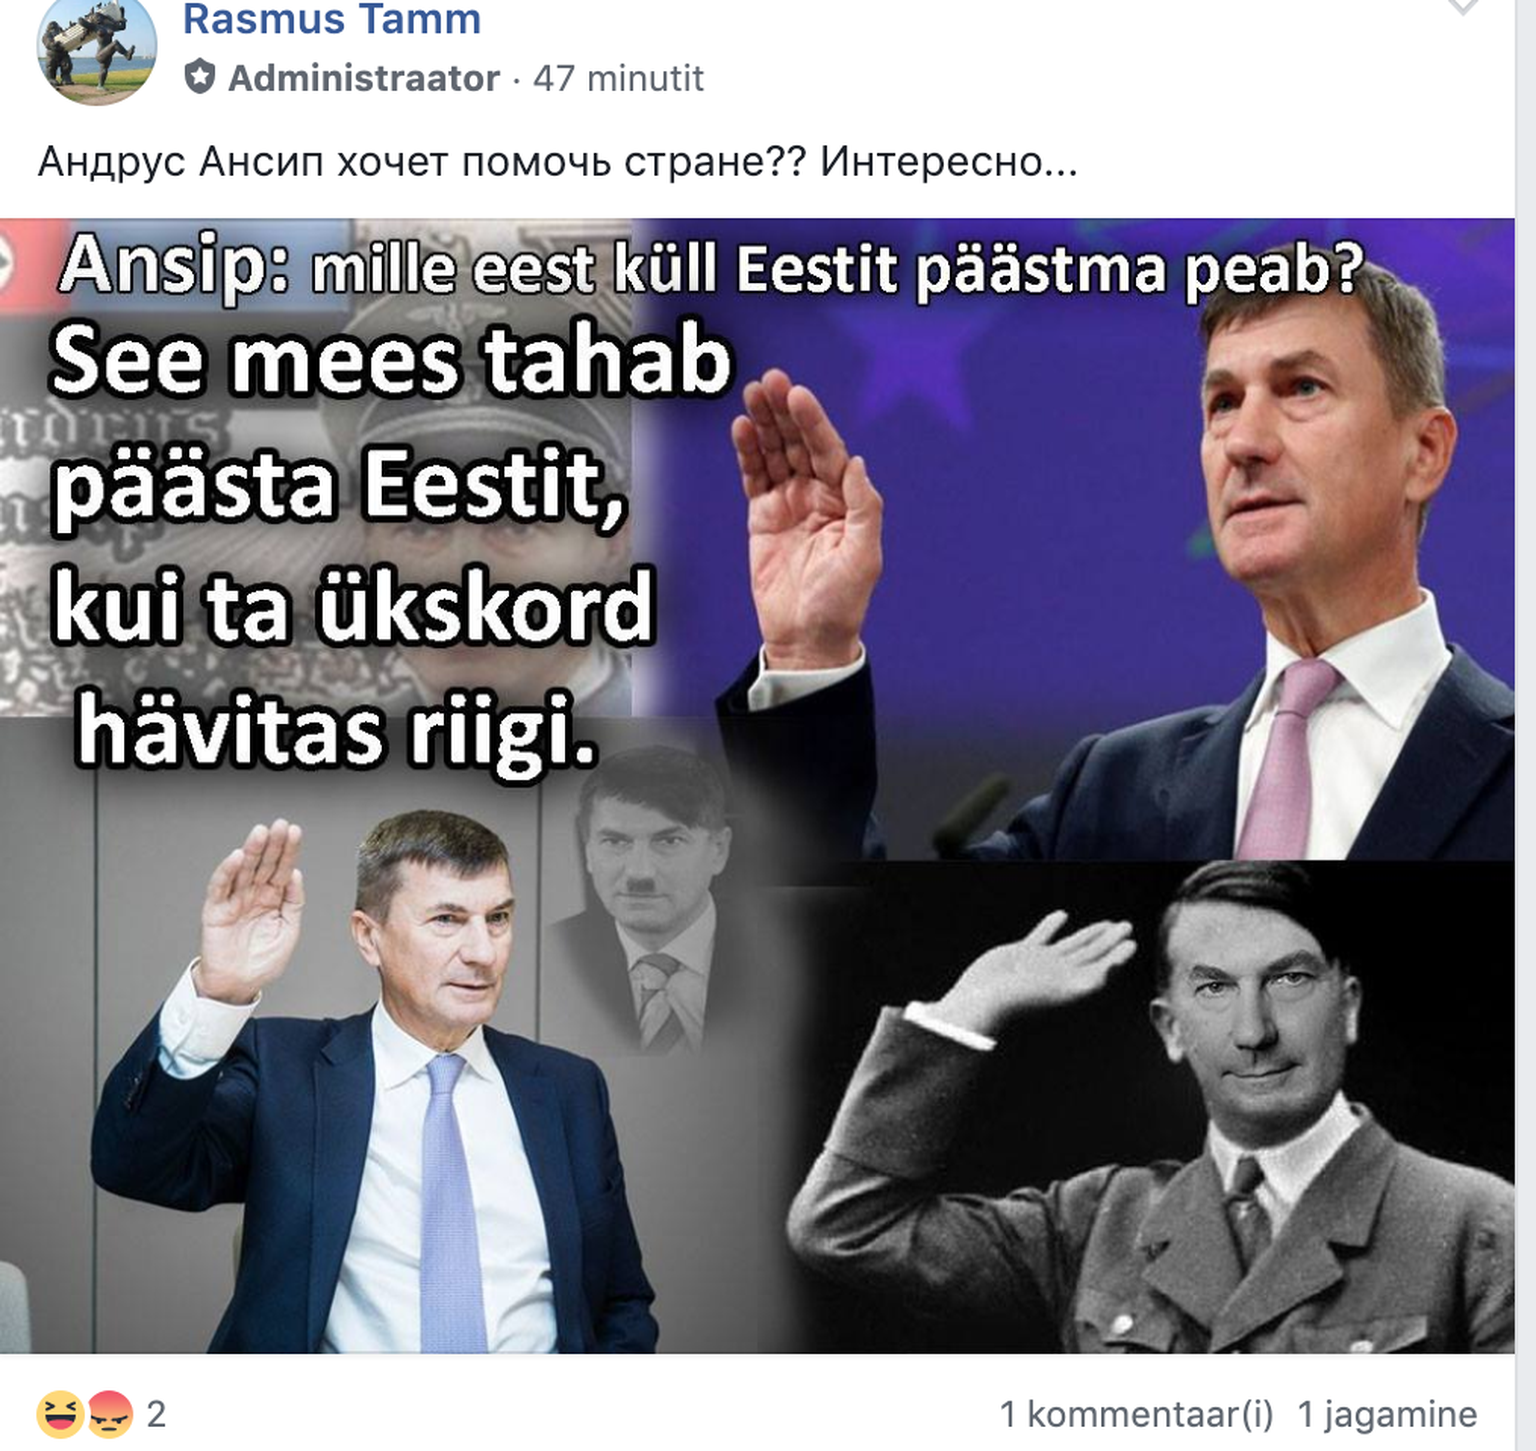 Võltskonto Rasmus Tamme postitus, mis võrdleb Andrus Ansipit Hitleriga.